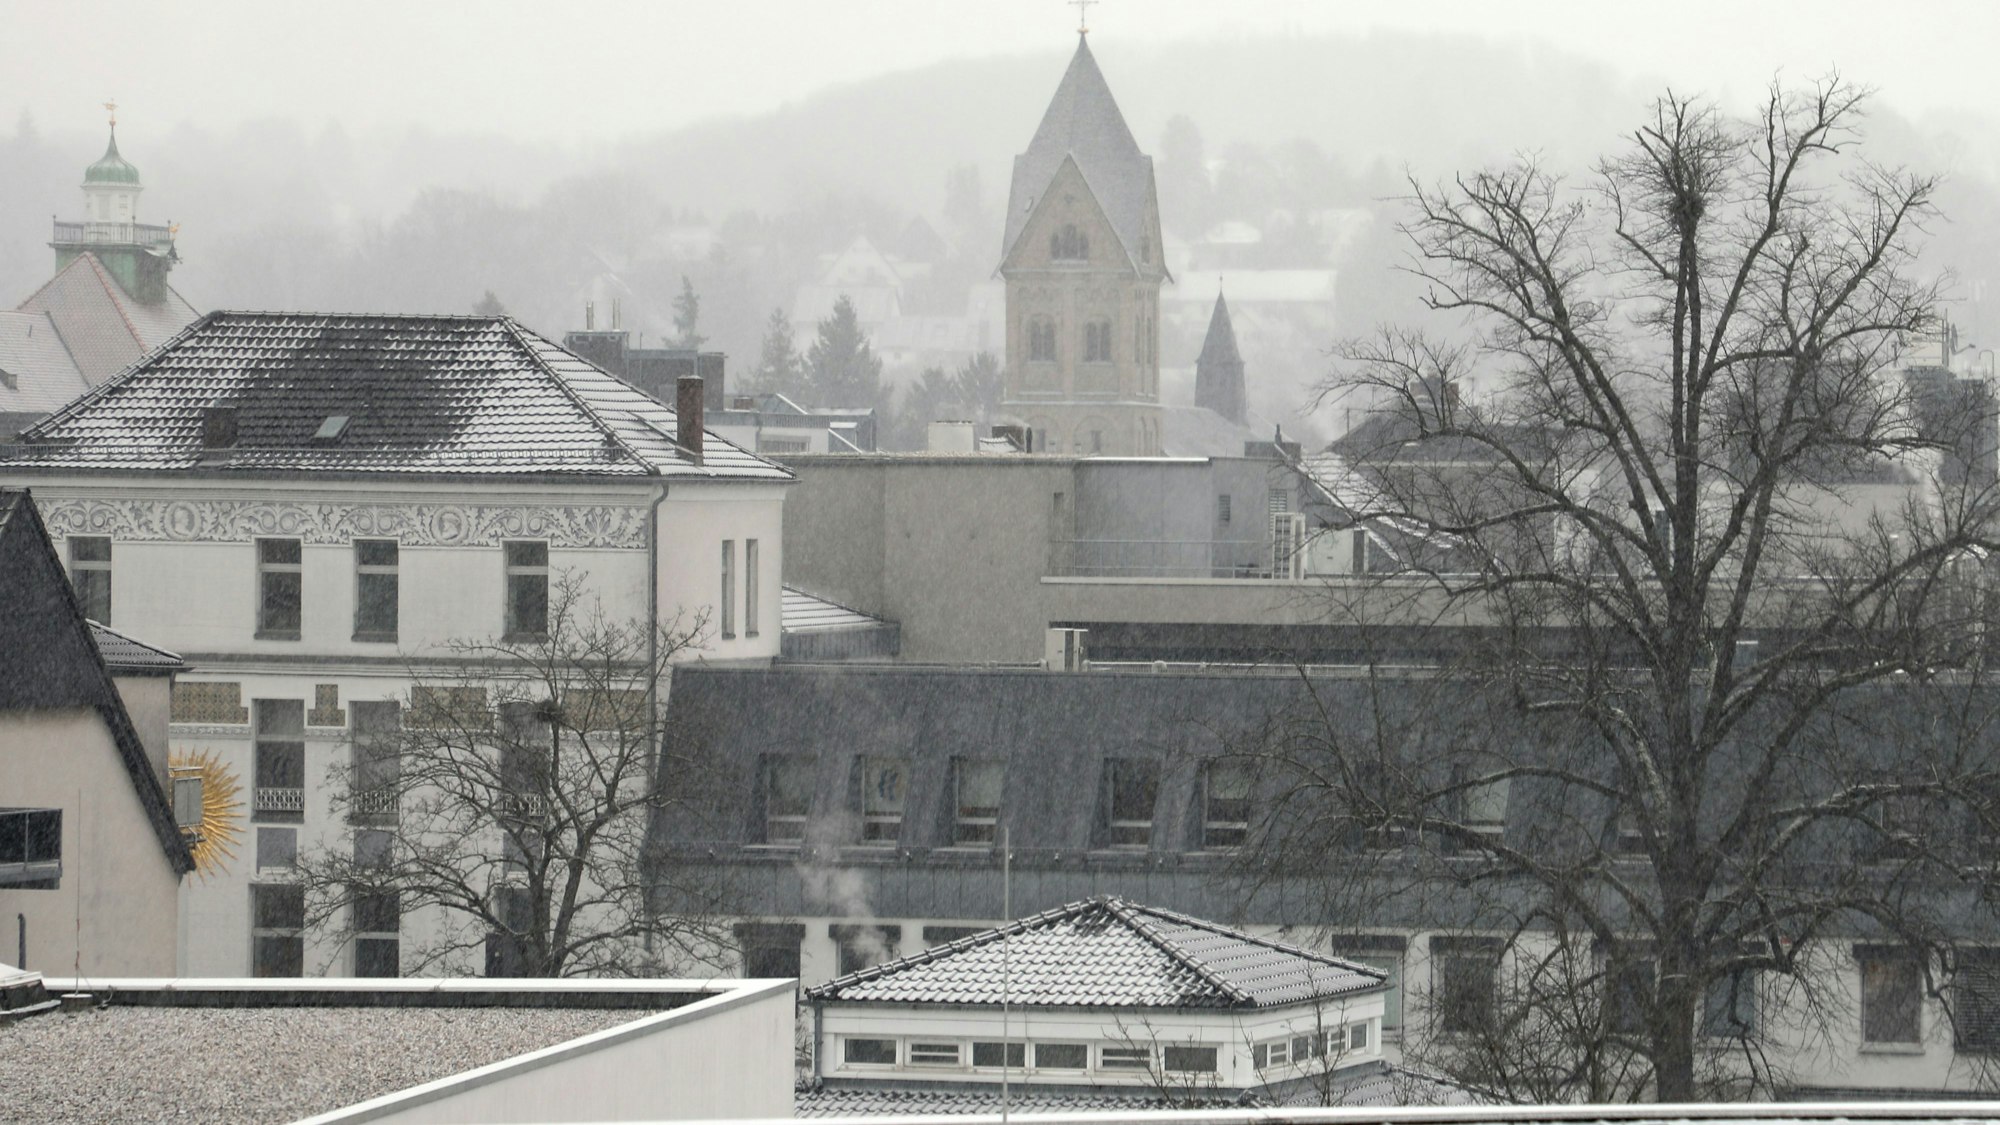 Bergisch Gladbach: Immerhin, ein bisschen Weiß ist auf den Dächern bereits zu sehen.